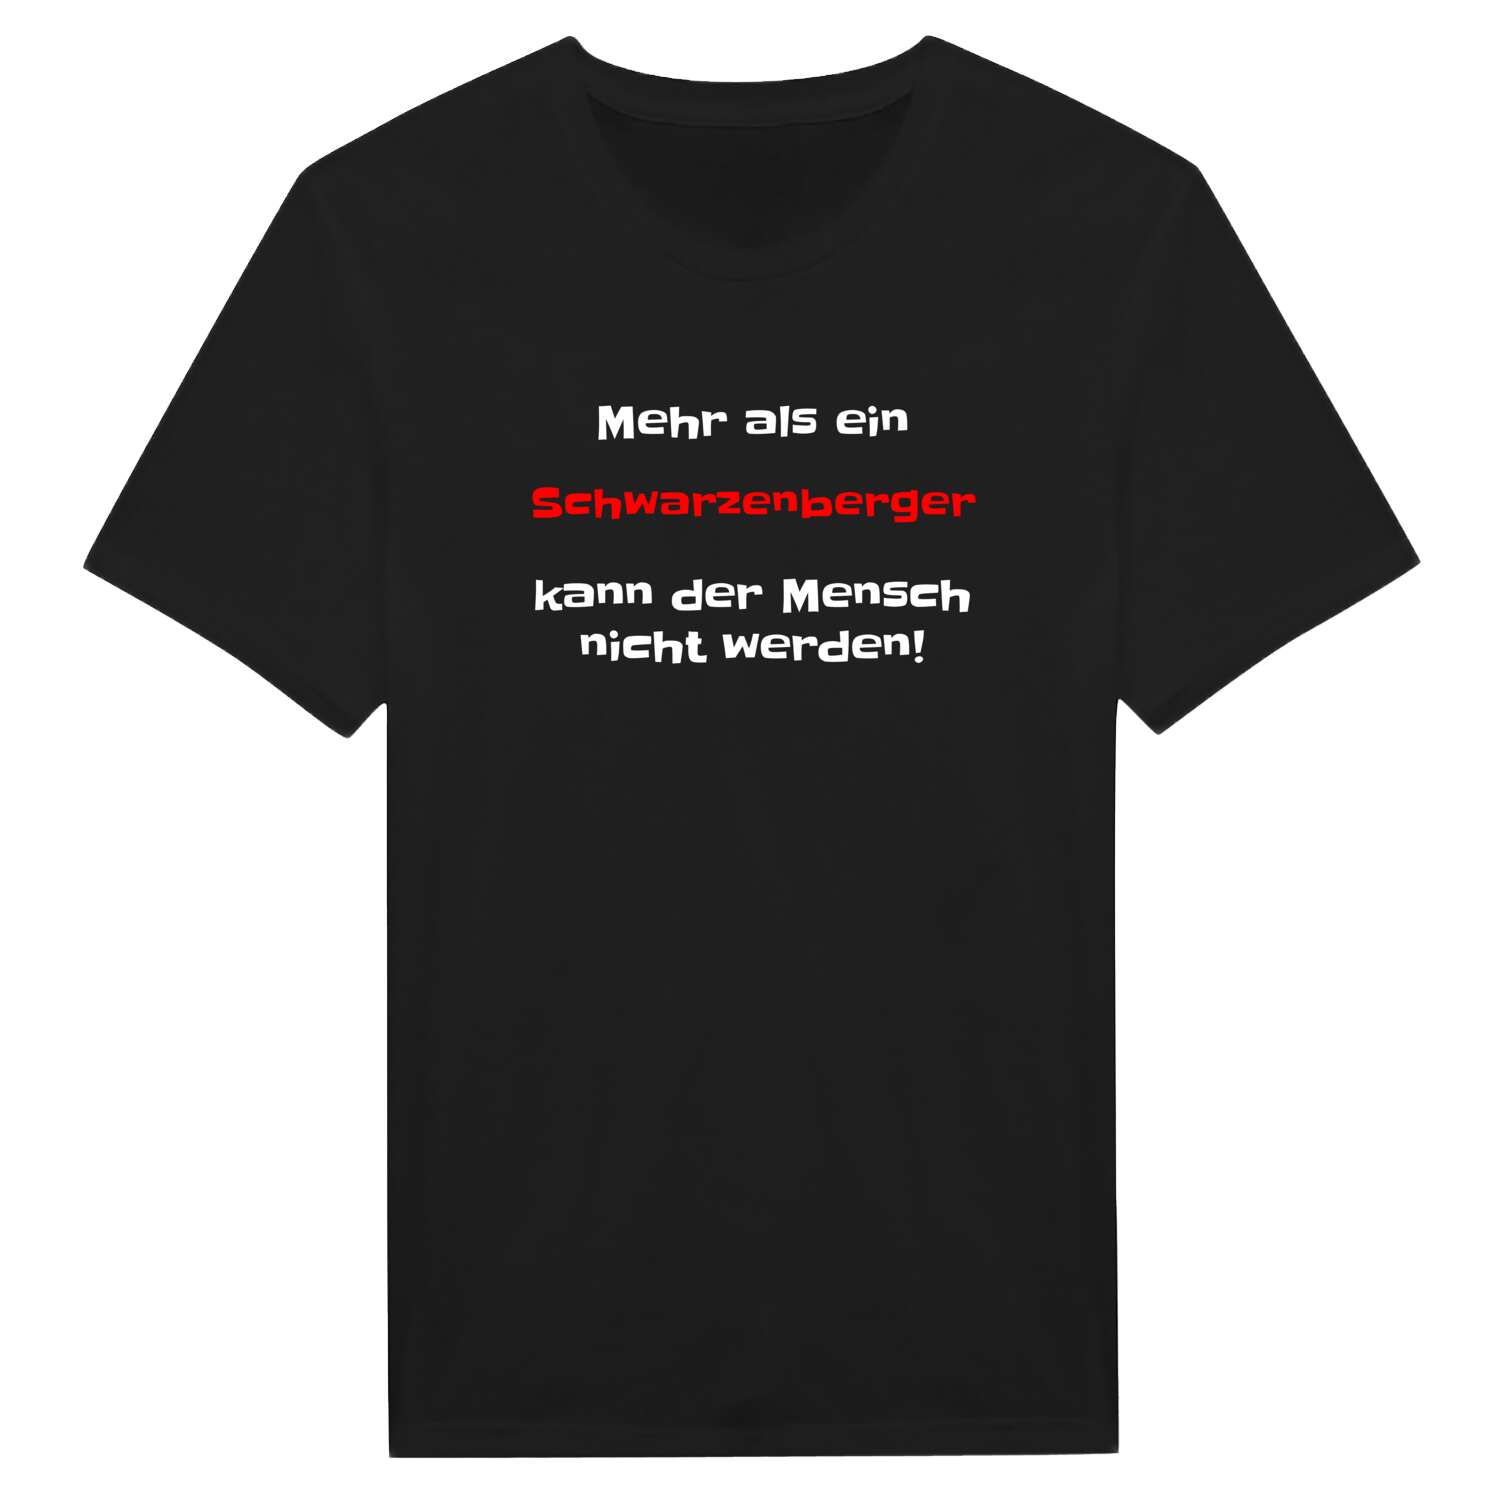 Schwarzenberg T-Shirt »Mehr als ein«